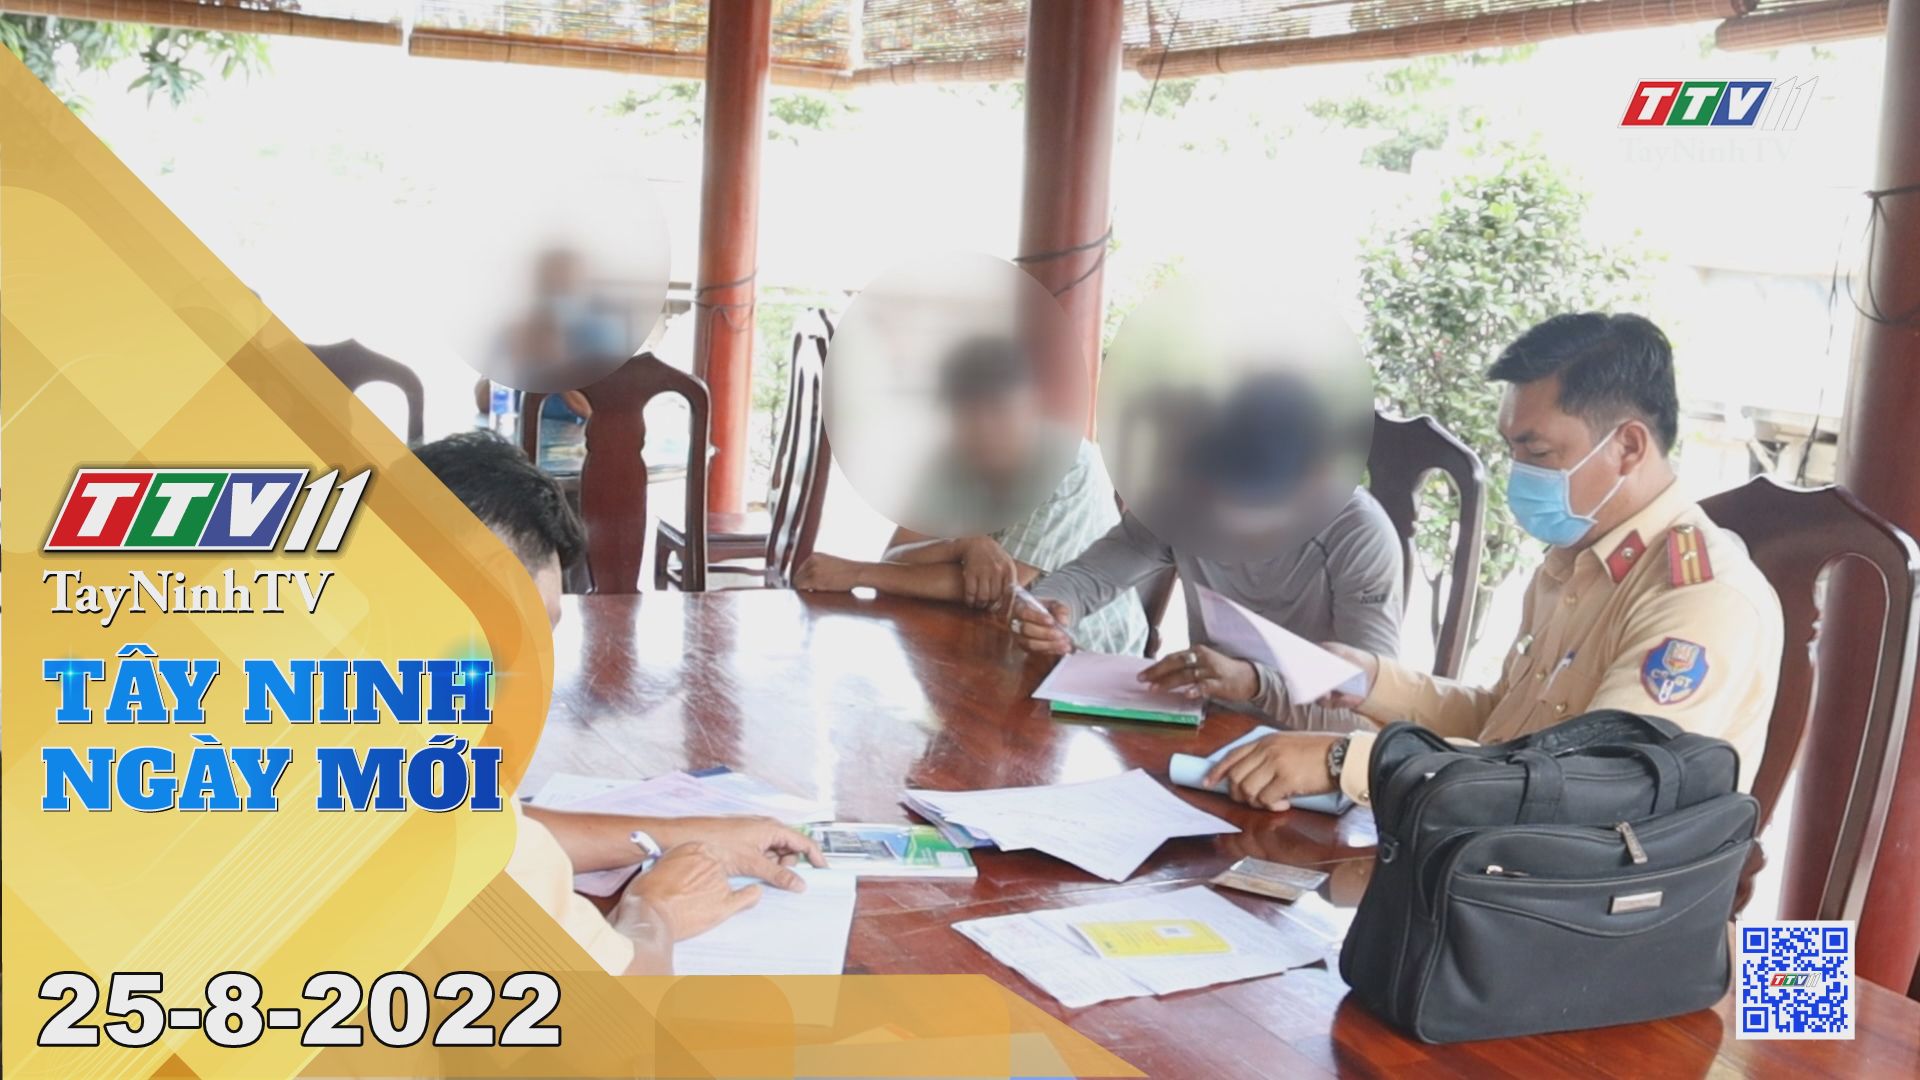 Tây Ninh ngày mới 25-8-2022 | Tin tức hôm nay | TayNinhTV